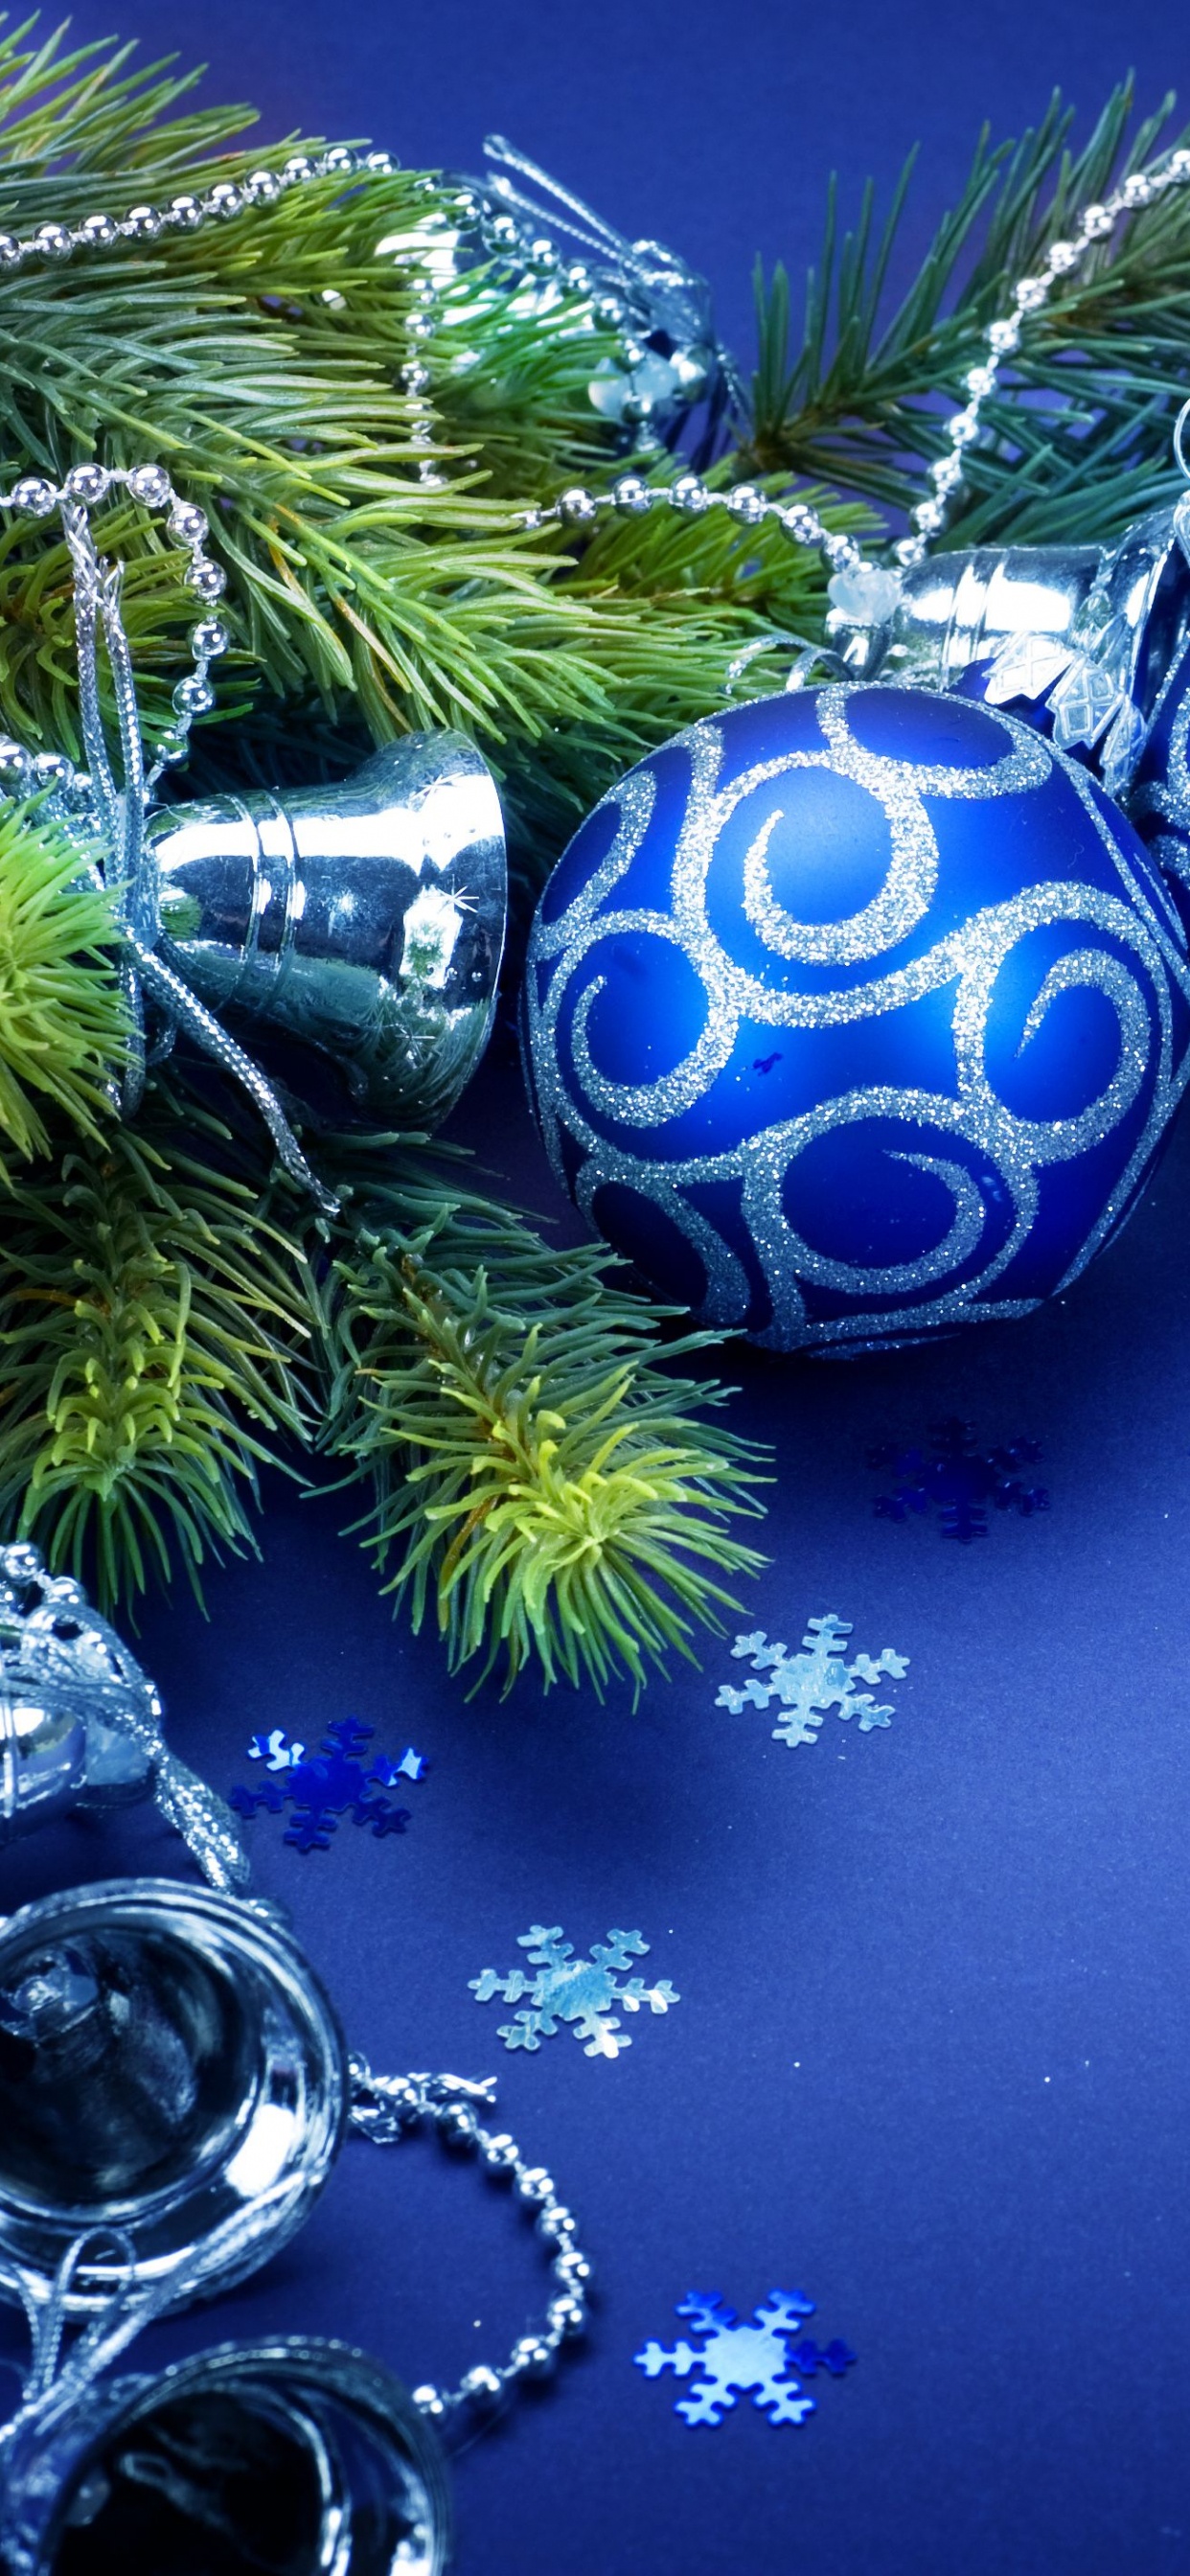 Weihnachten, Christmas Ornament, Blau, Weihnachtsdekoration, Baum. Wallpaper in 1242x2688 Resolution